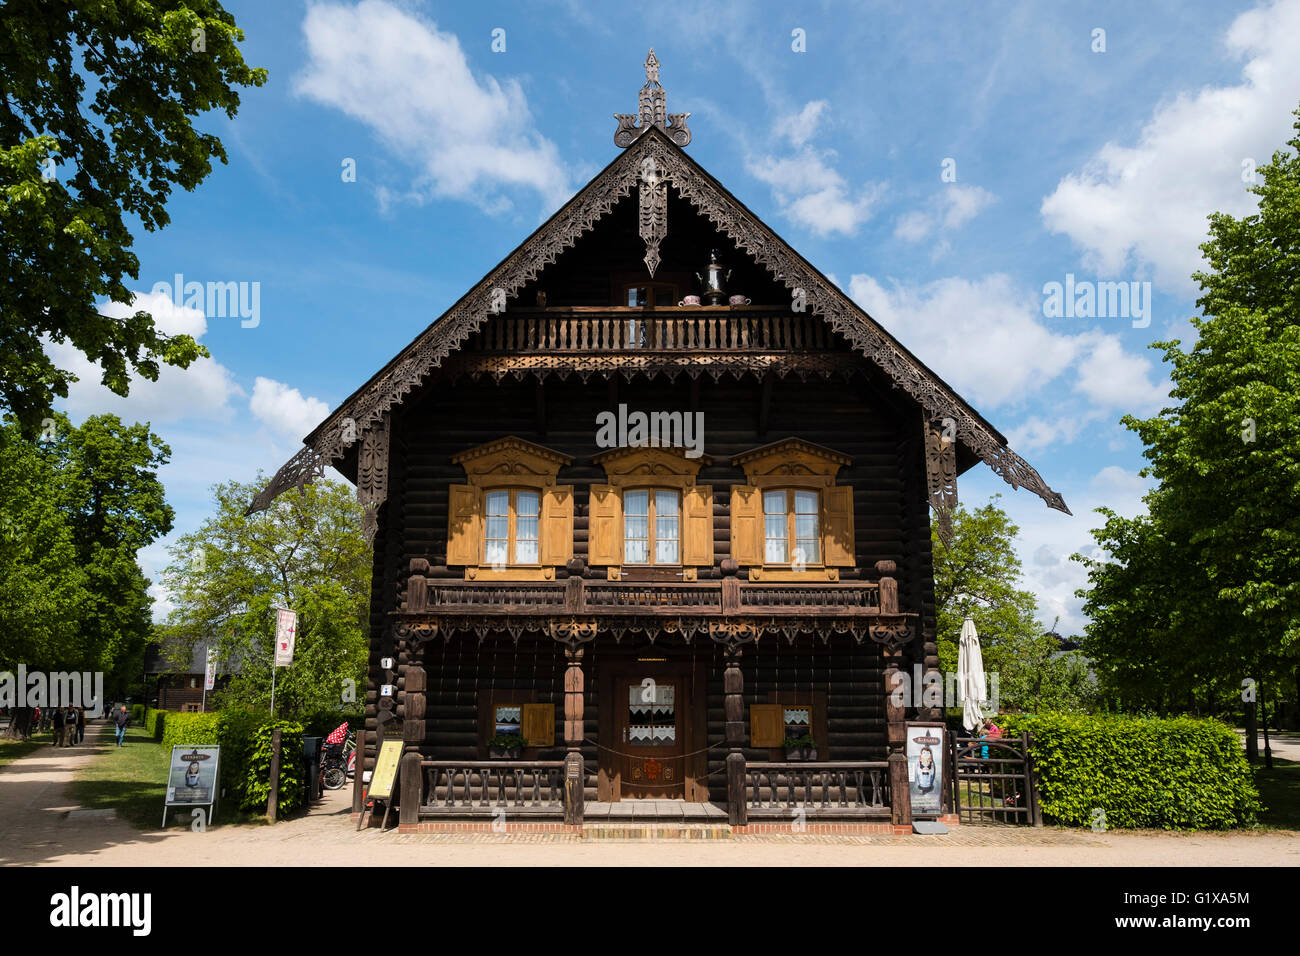 Casa de madera en la exhibición en Russischen Kolonie () colonia rusa Alexandrowka, Potsdam, Brandenburgo, Alemania Foto de stock